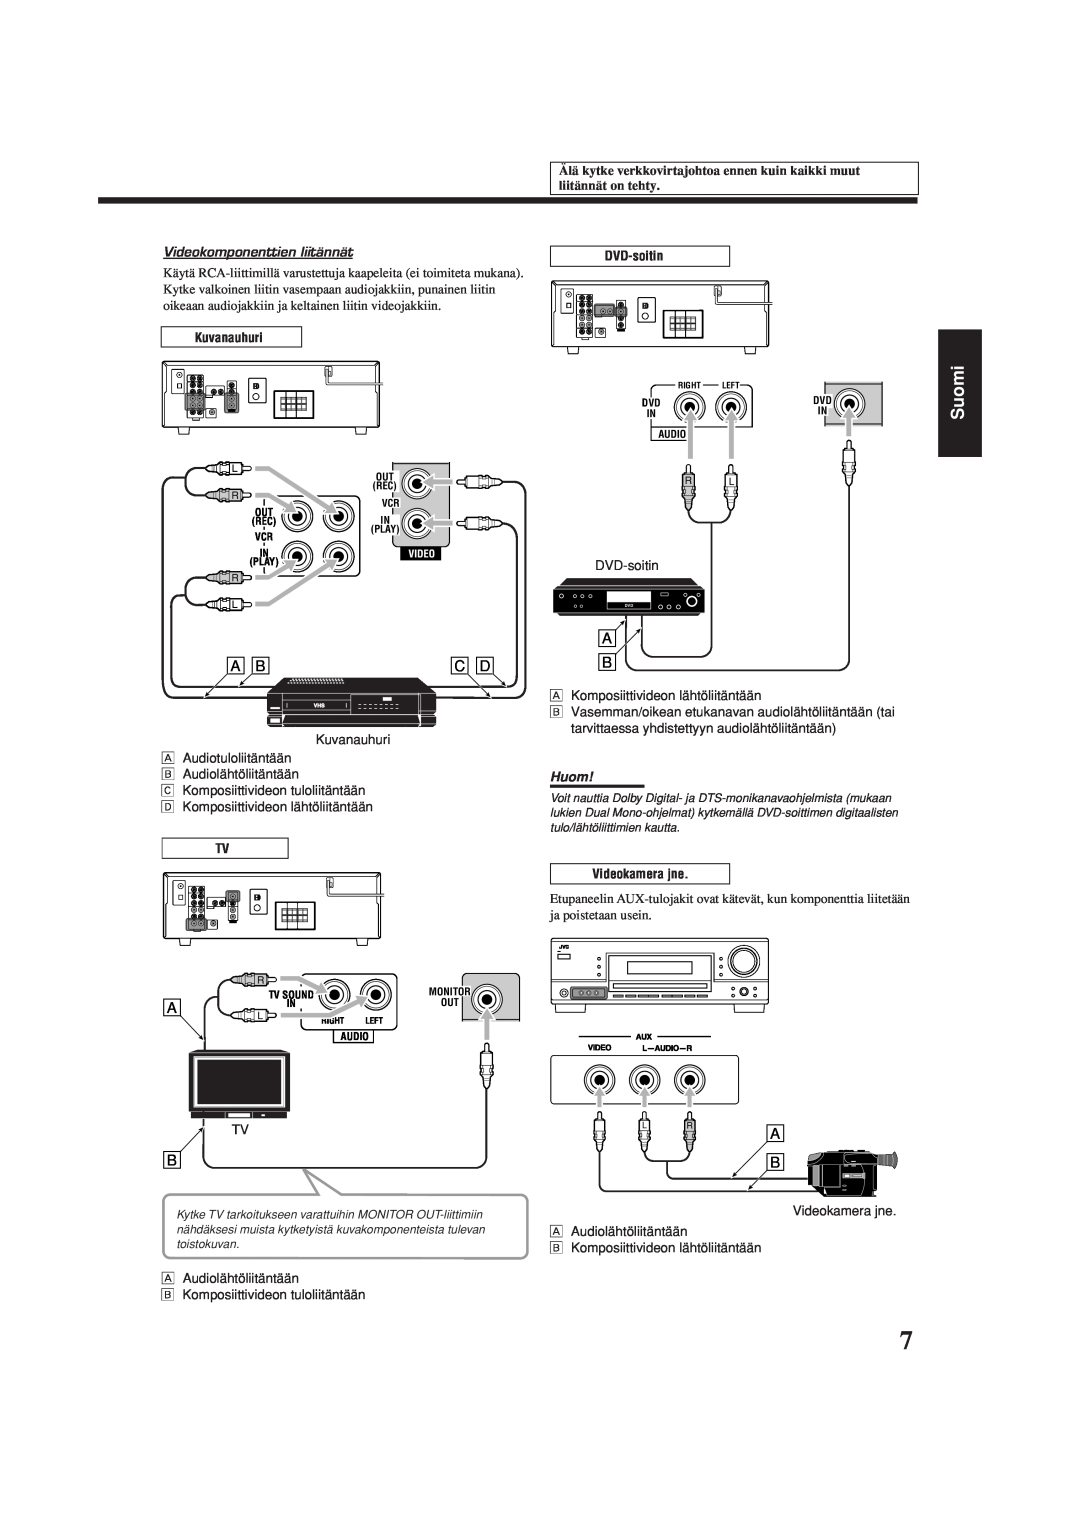 JVC RX-5060S manual Suomi, Videokomponenttien liitännät, Huom, Å Audiolähtöliitäntään, ı Komposiittivideon lähtöliitäntään 